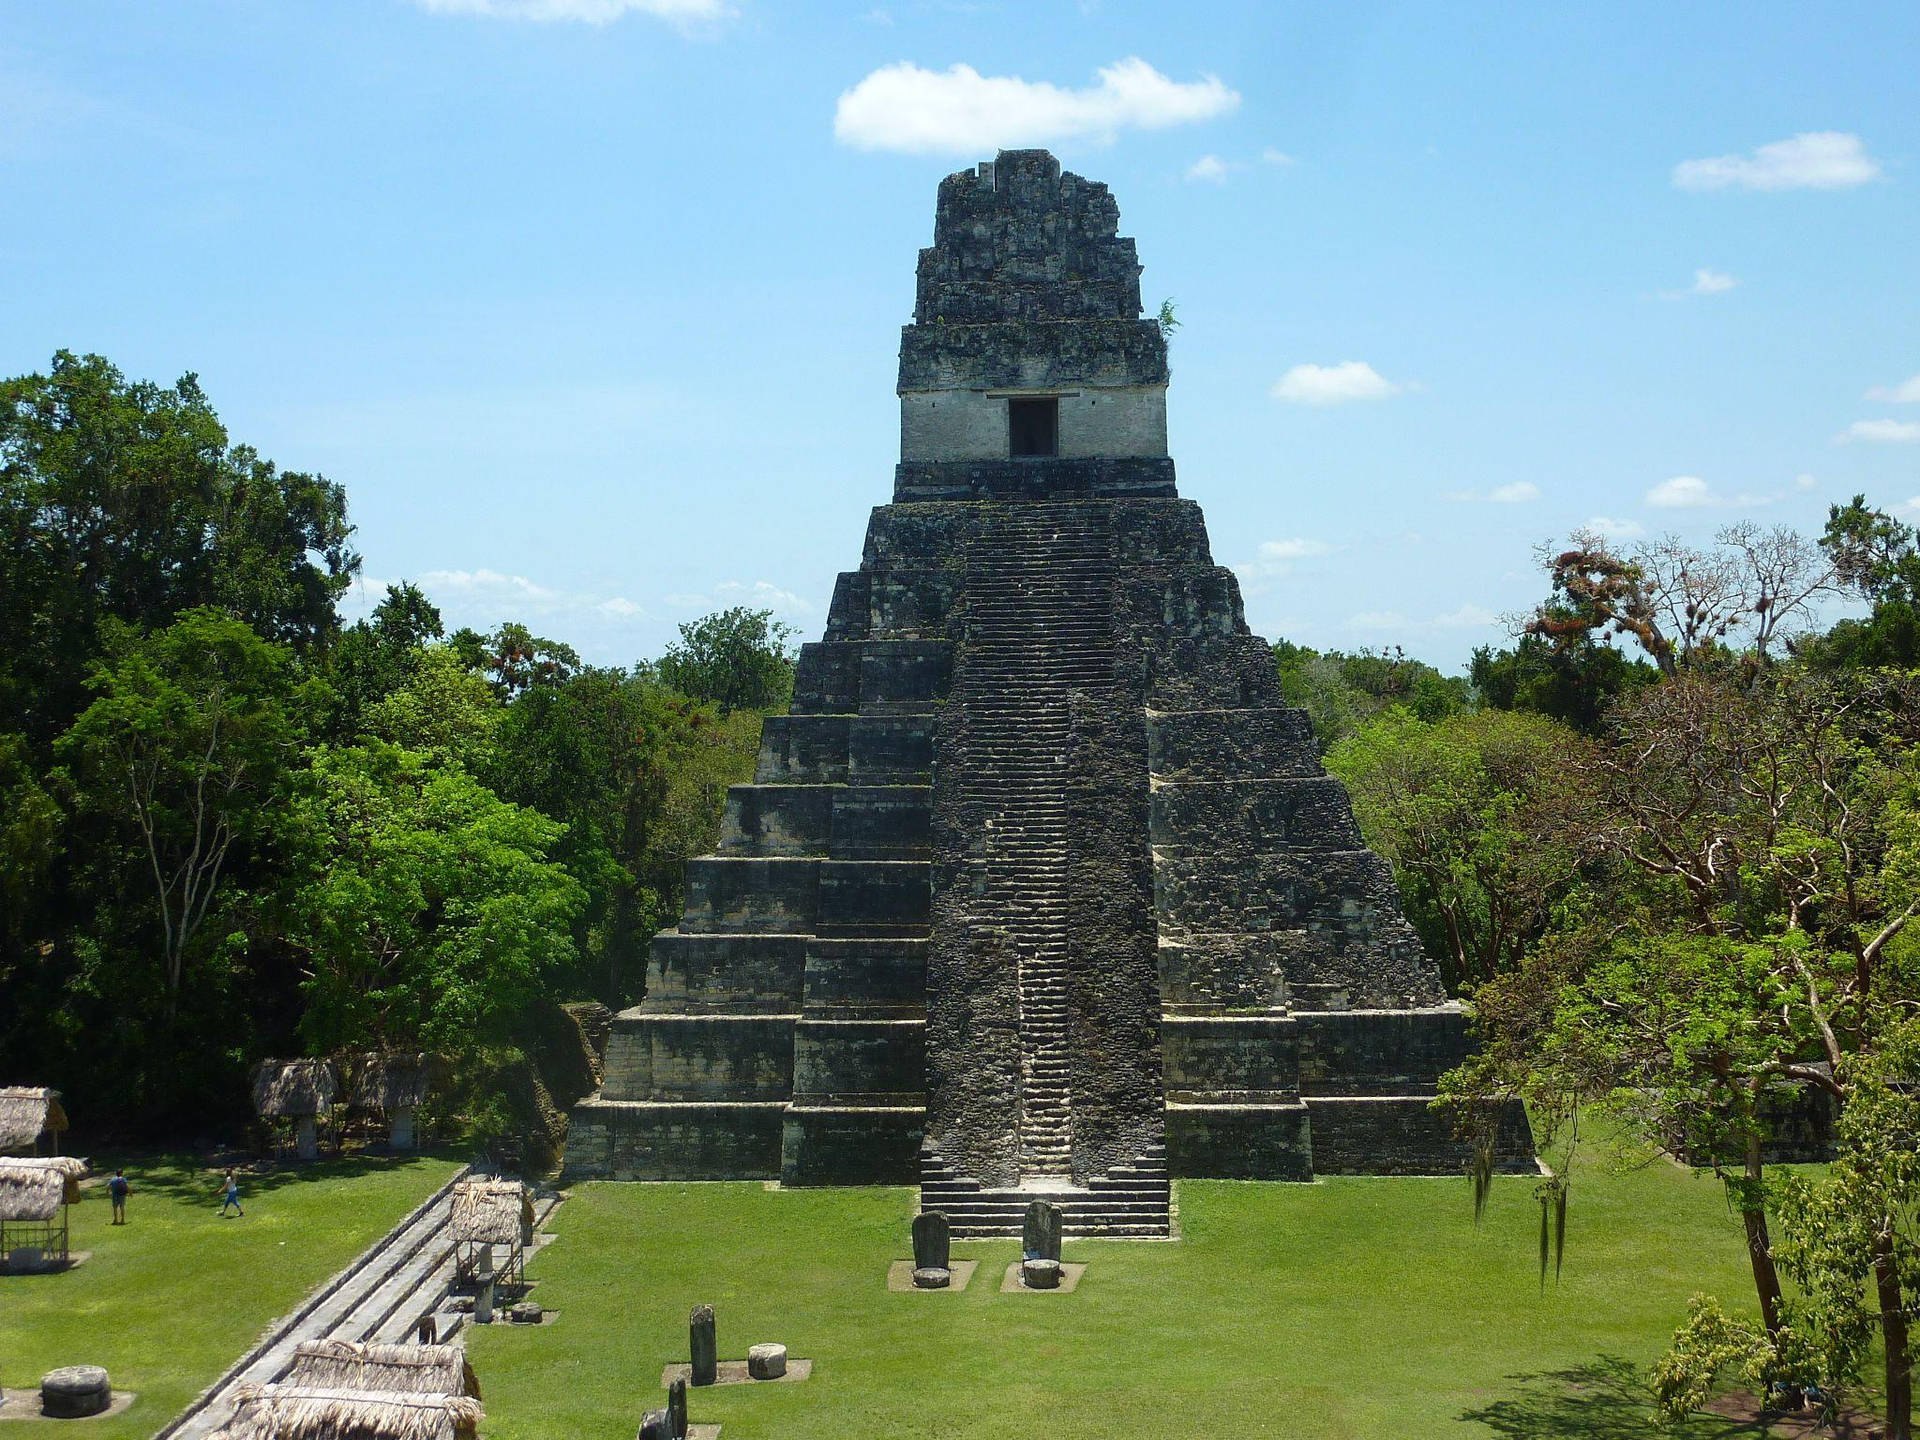 Tikal 2048 X 1536 Wallpaper